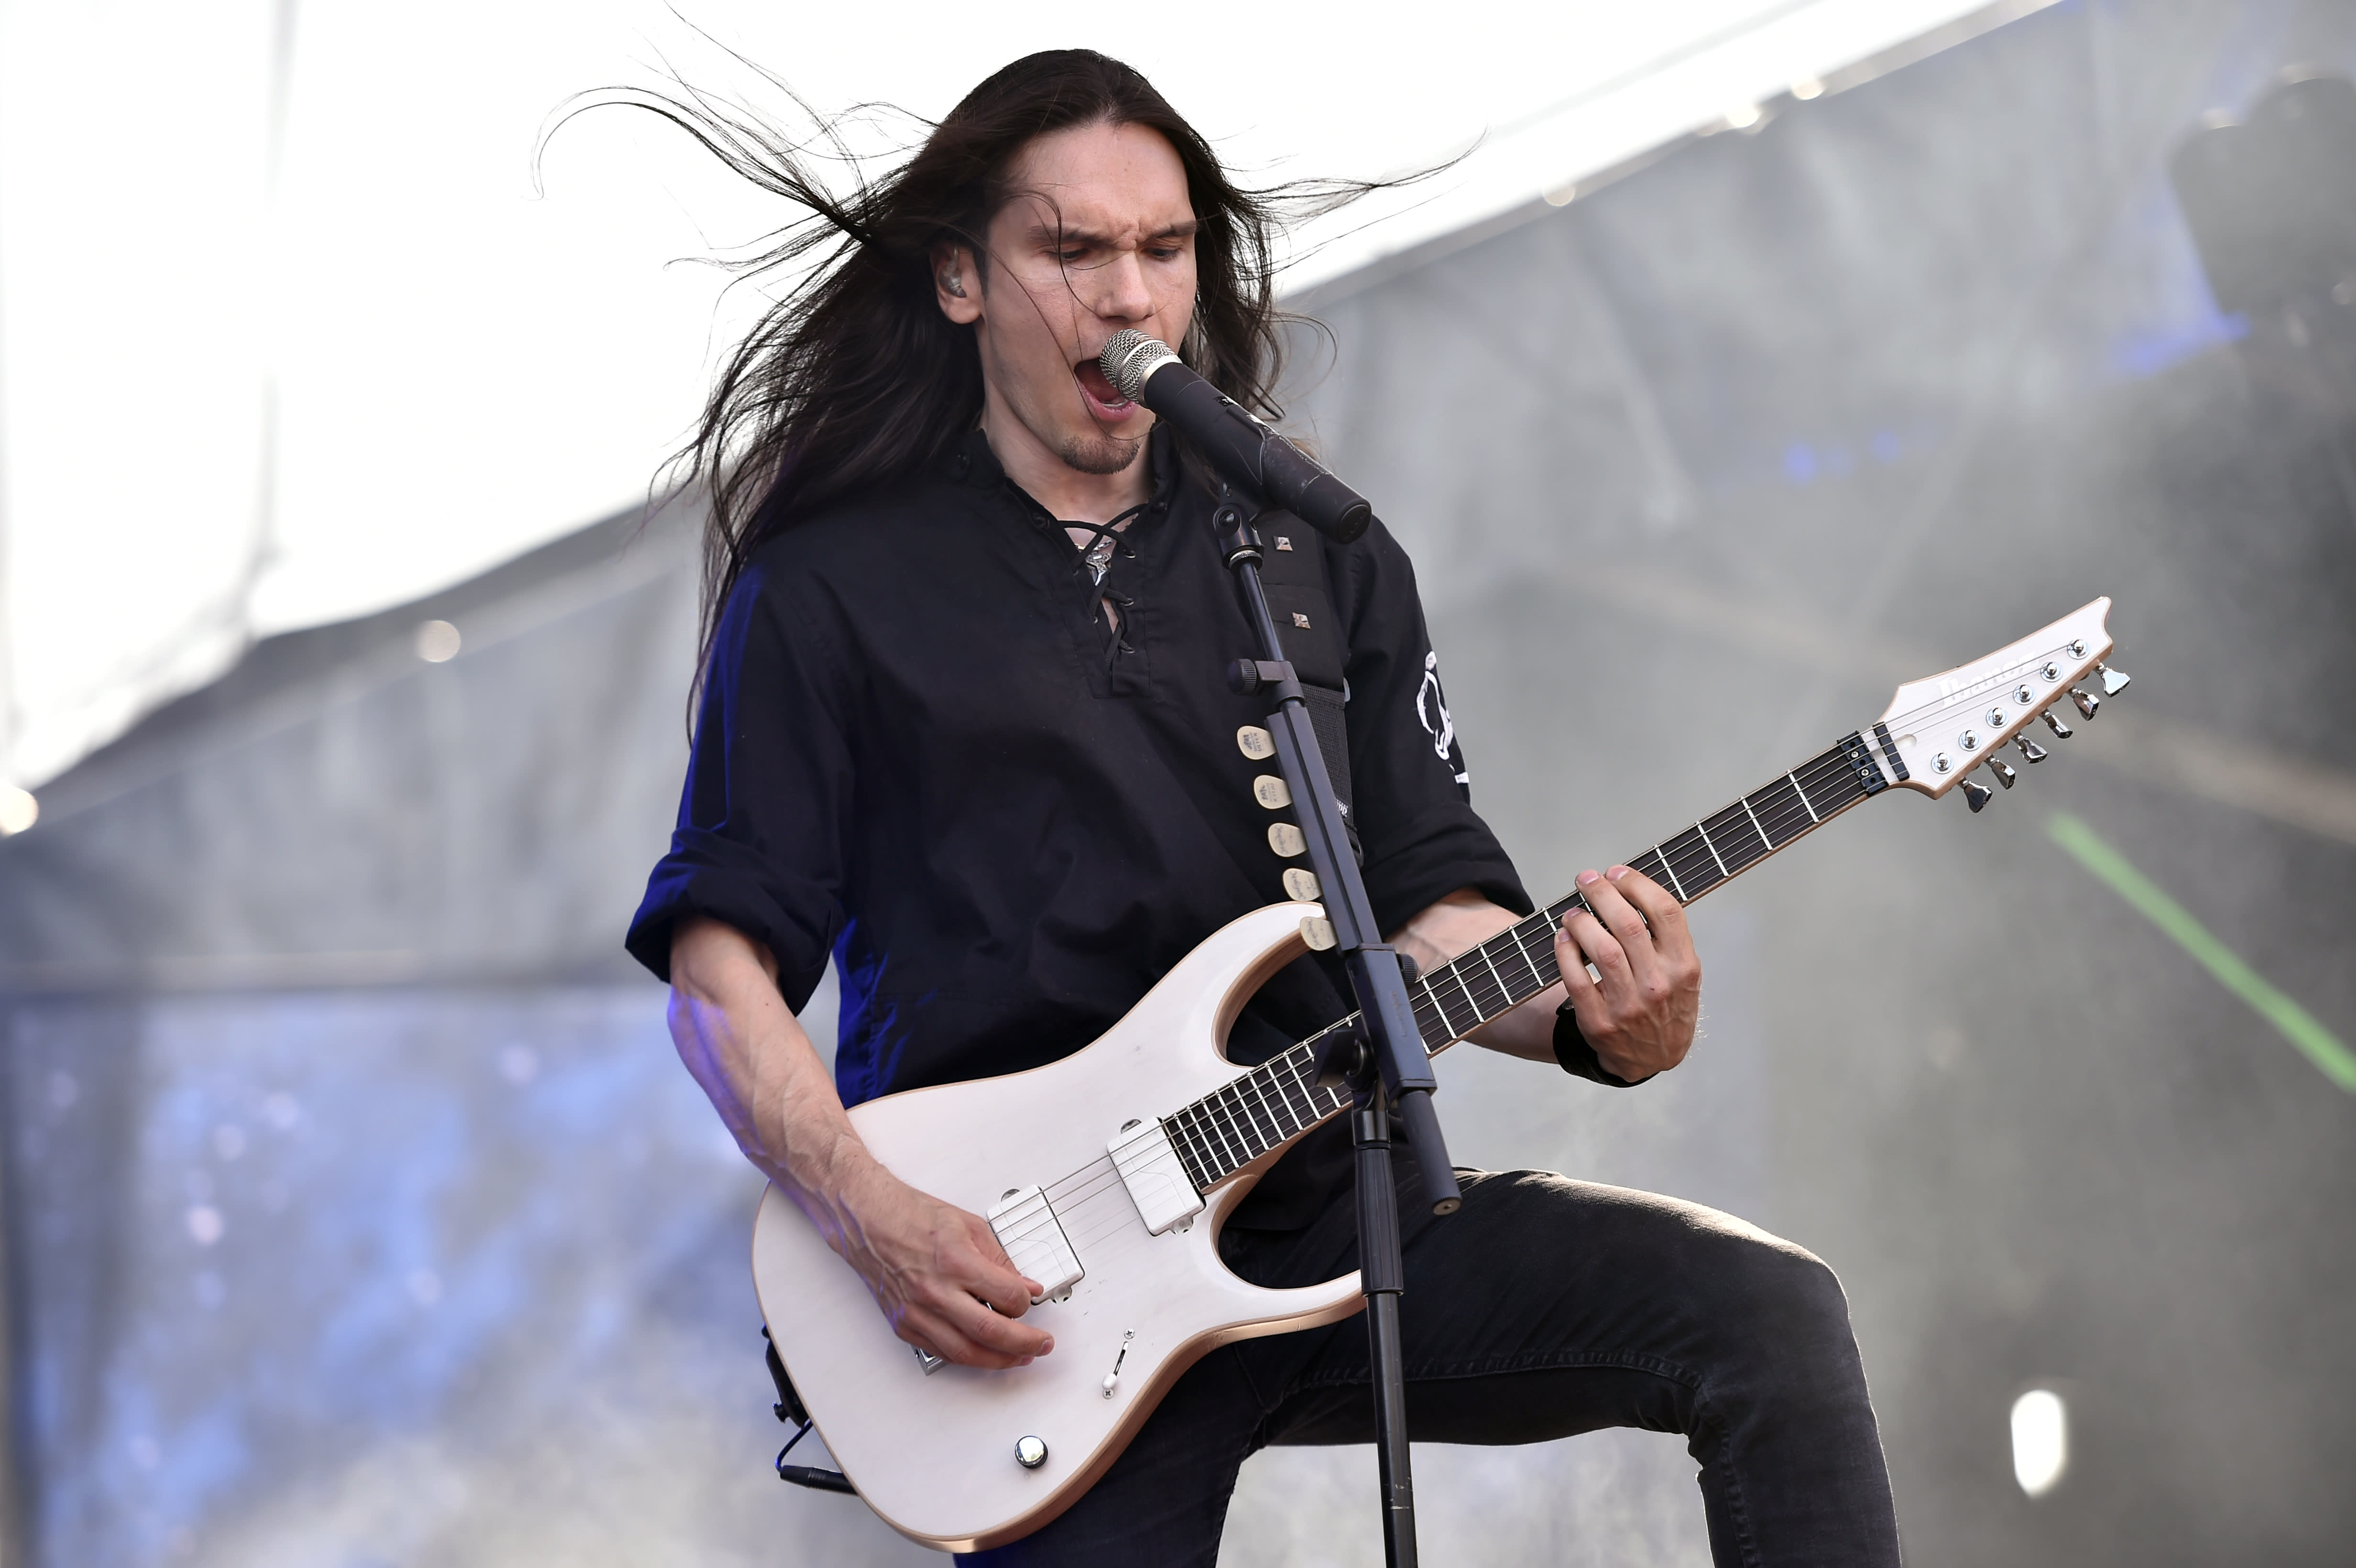 Finnish guitarist Mäntysaari joins Megadeth full time